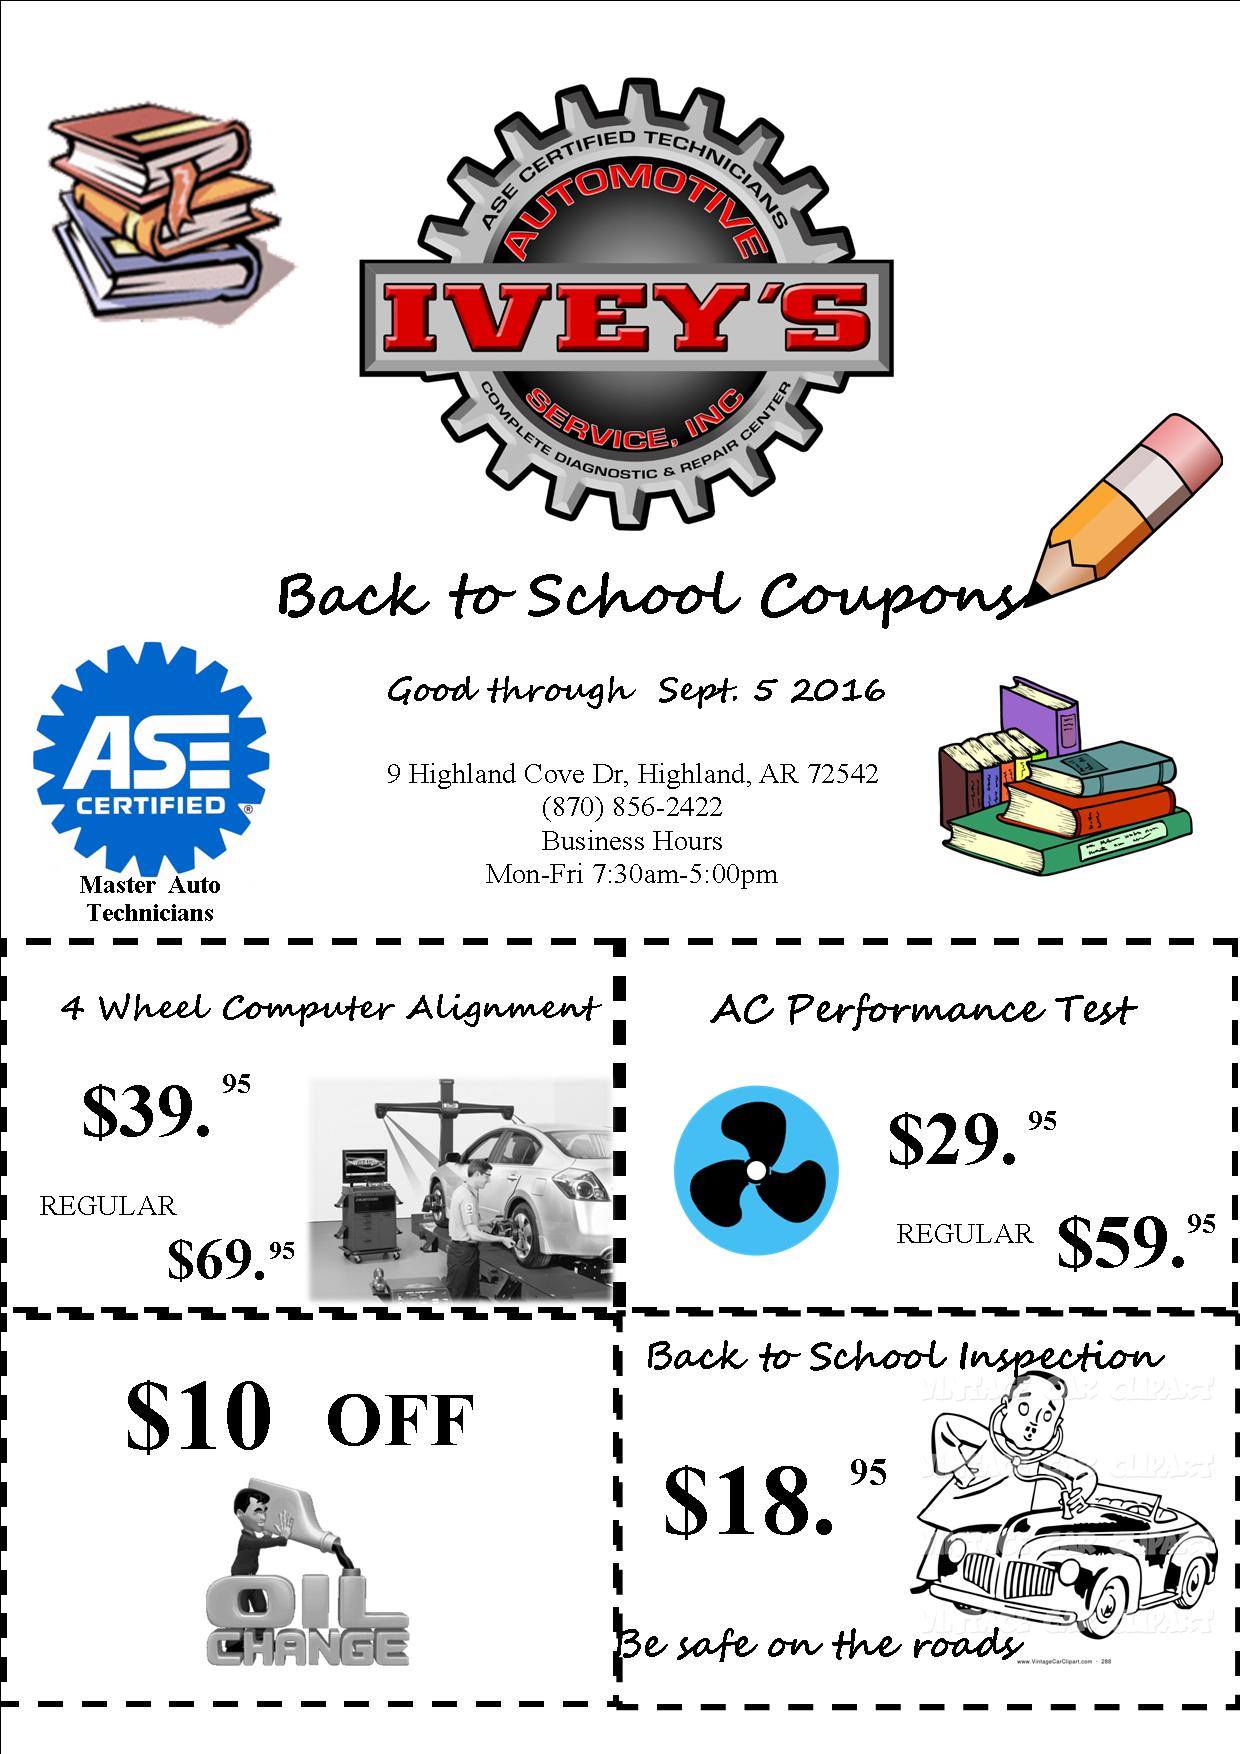 Ivey's Automotive Services